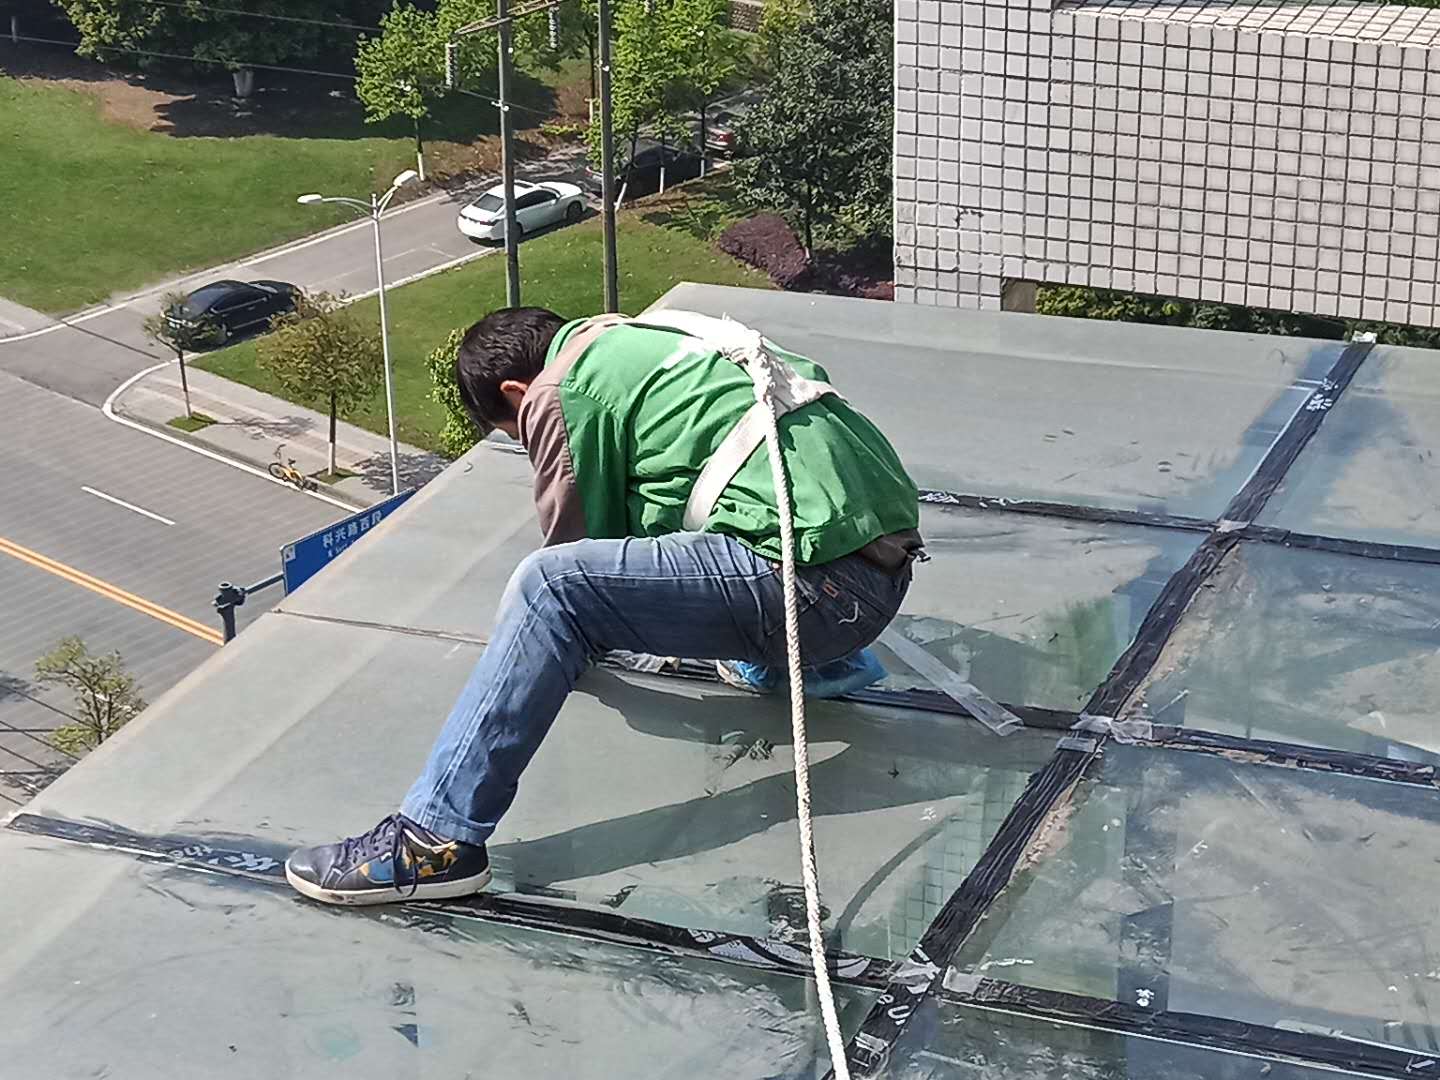 斜屋顶防水怎么做,做法方法多少钱,斜屋顶防水施工方案